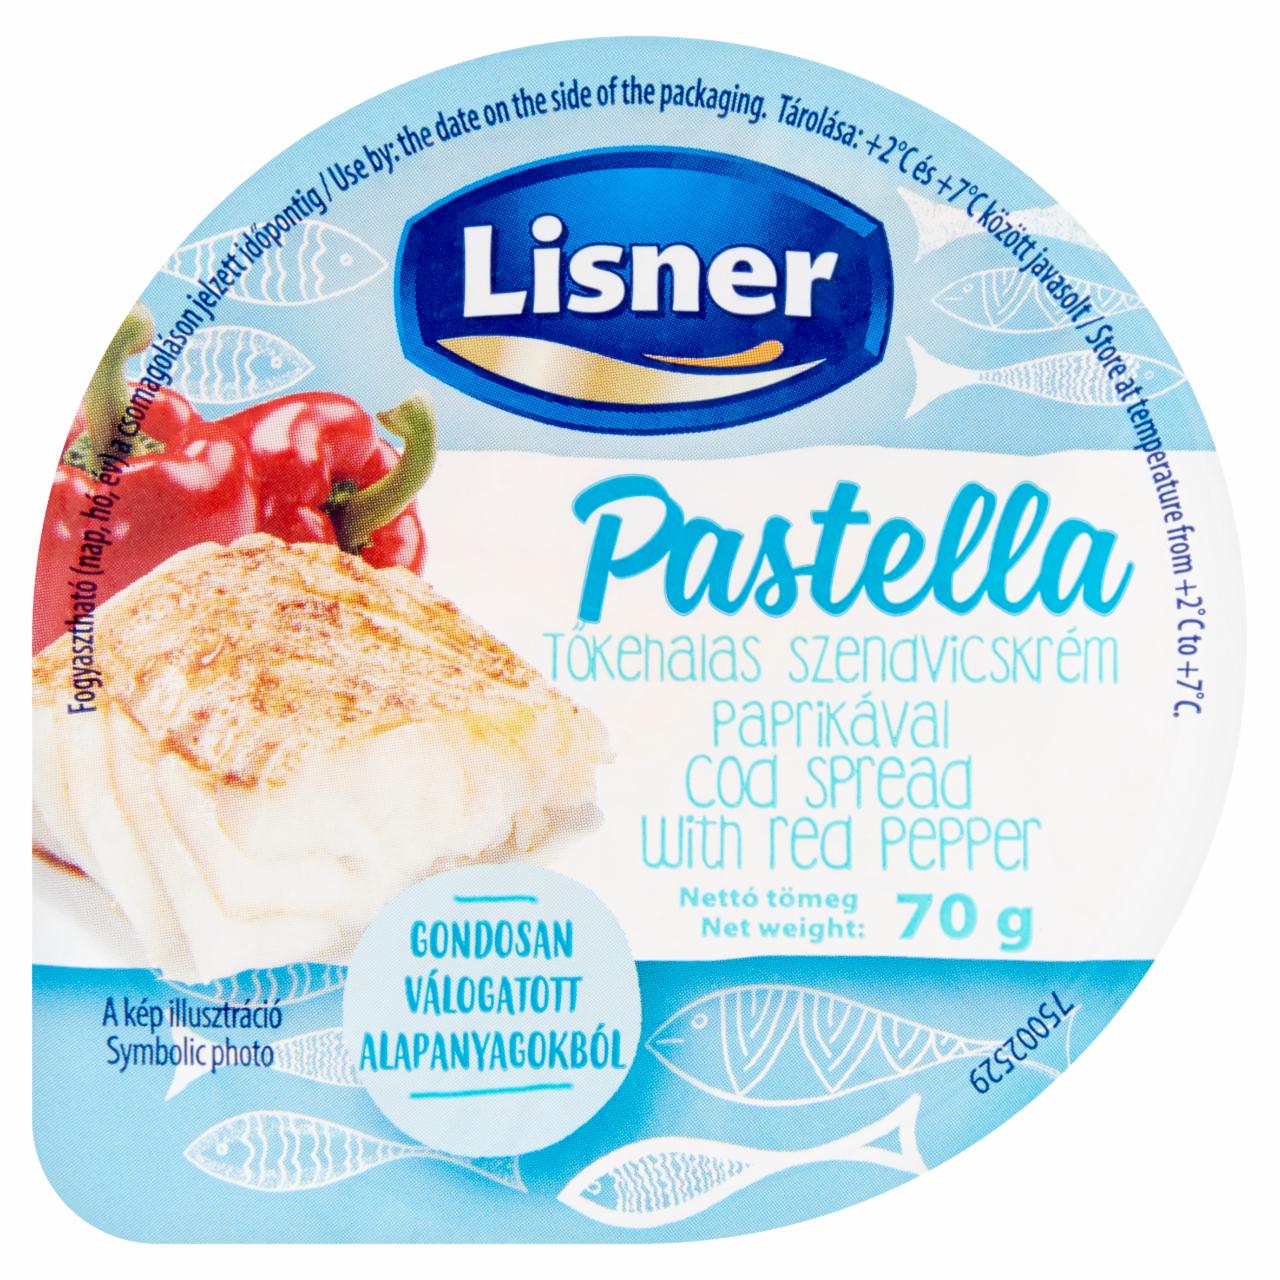 Képek - Lisner Pastella tőkehalas szendvicskrém paprikával 70 g